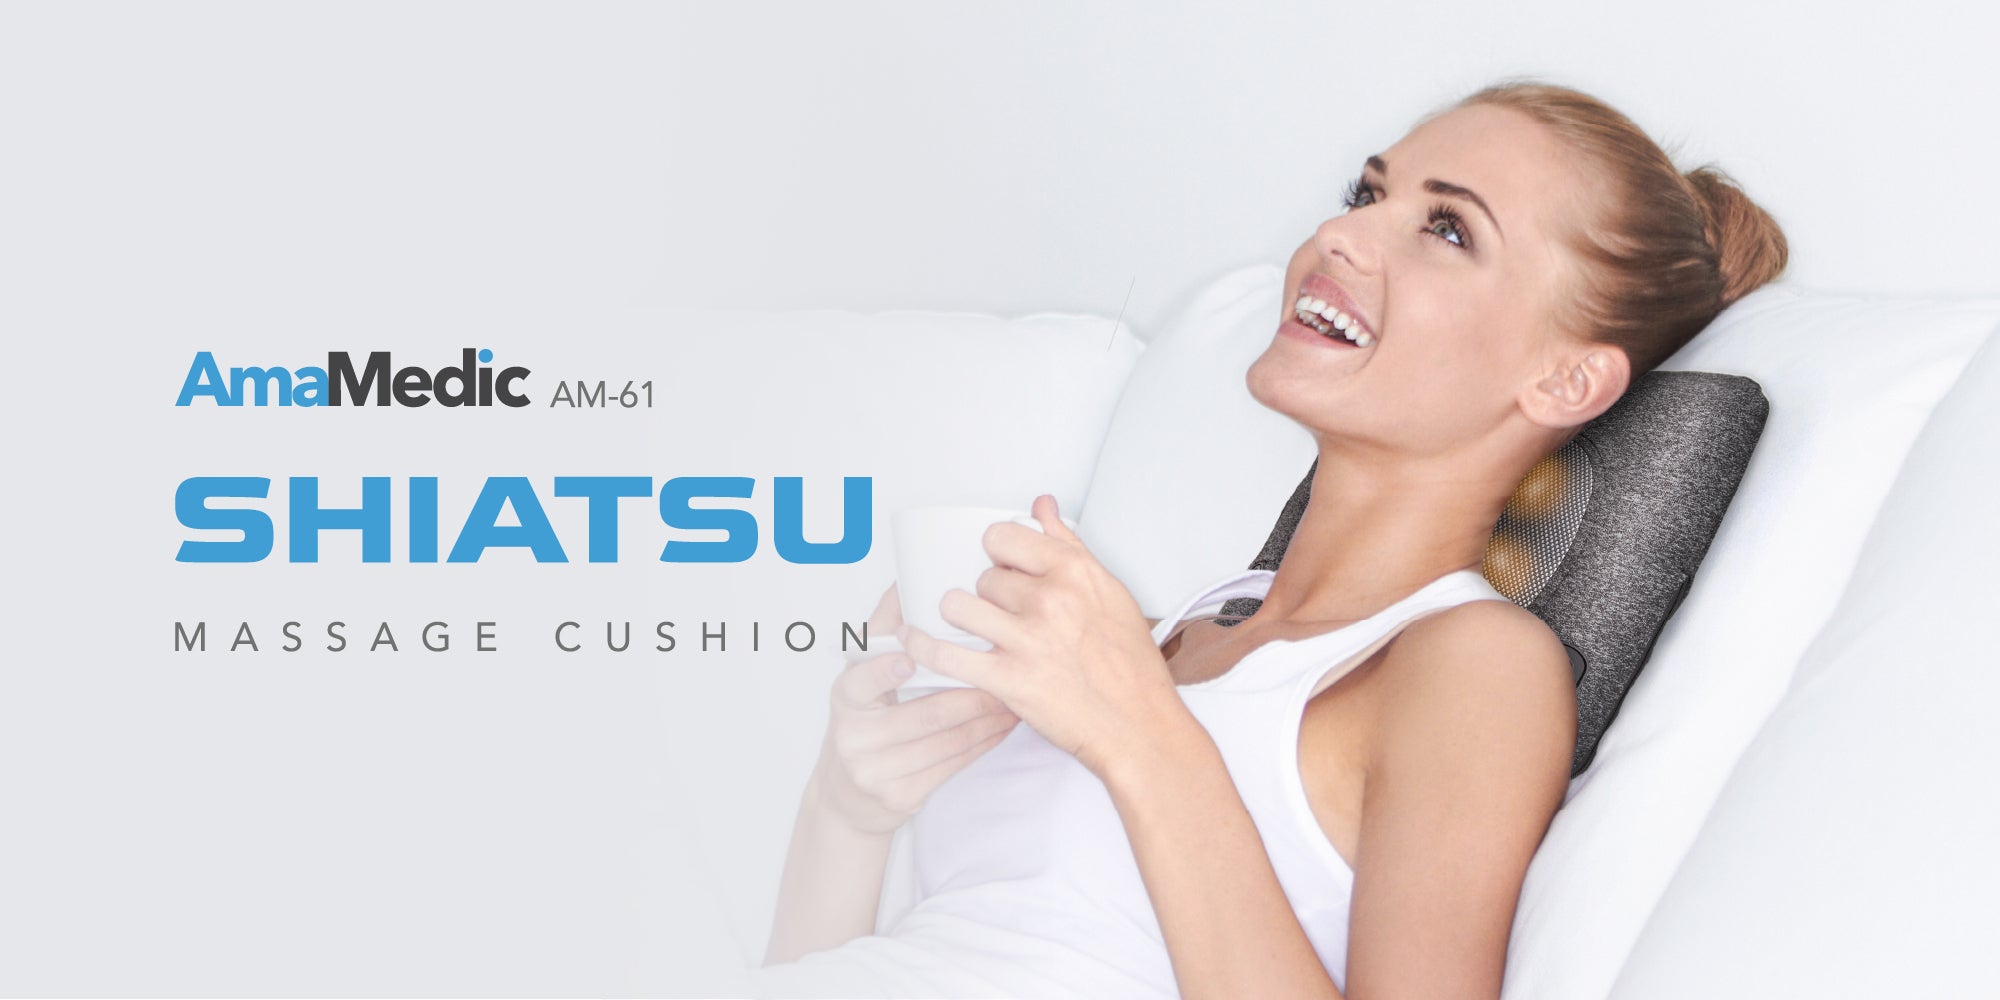 Amamedic AM-61 Shiatsu Massage Cushion - Main Banner